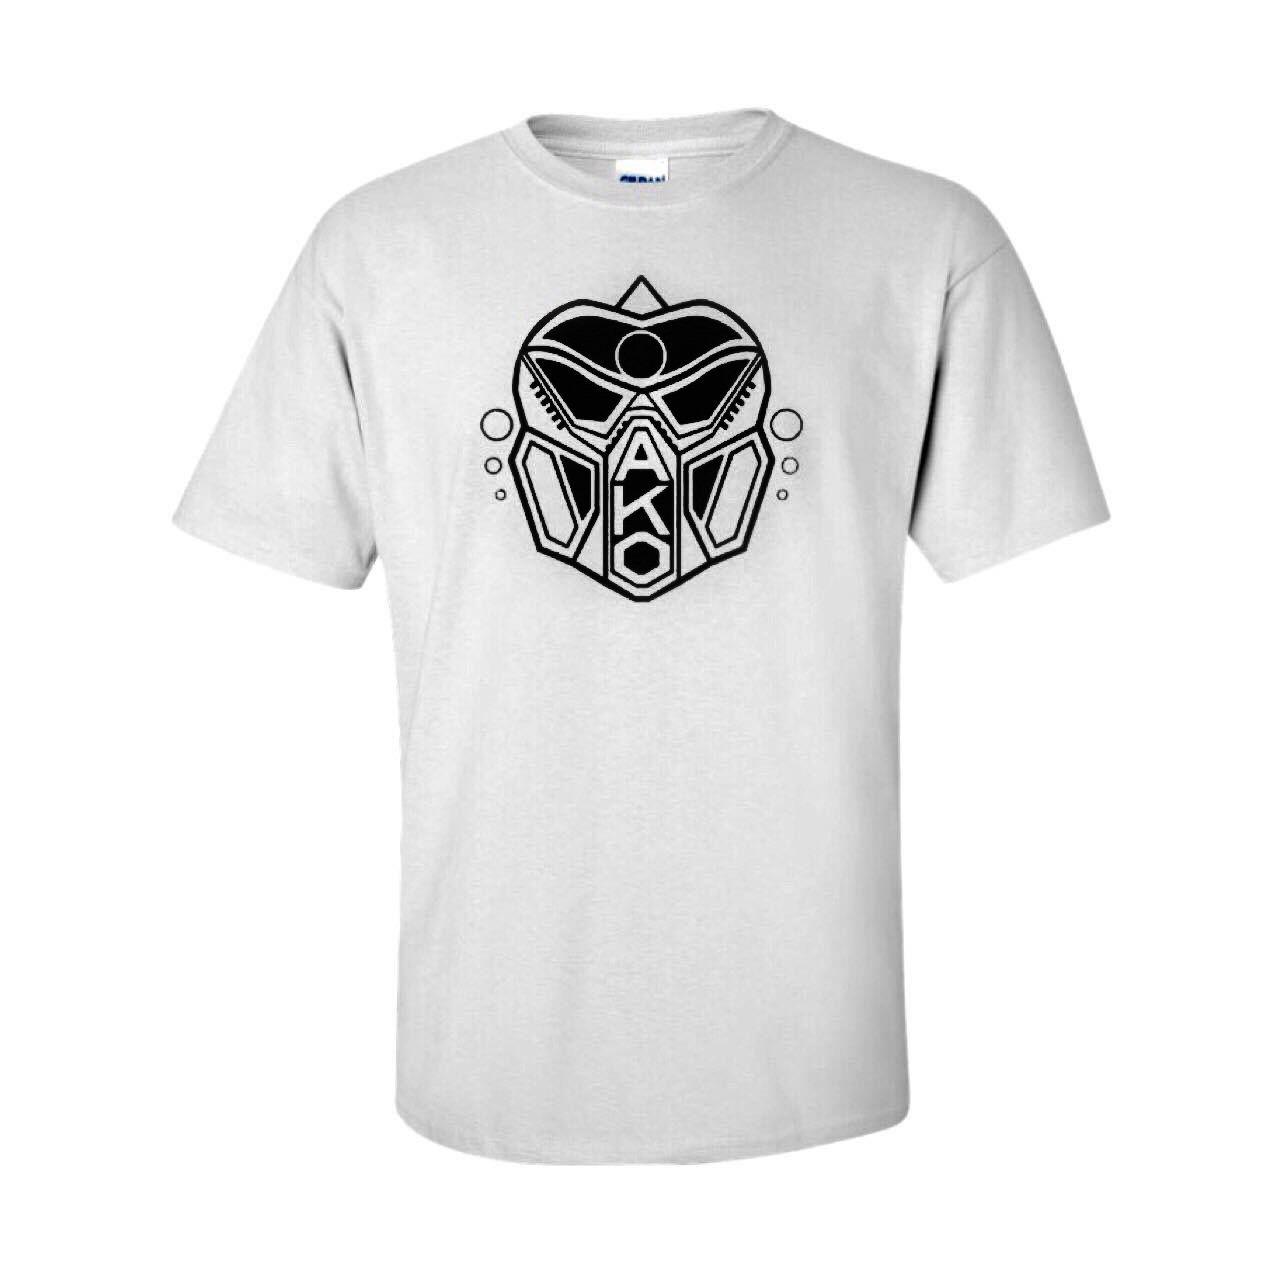 Ako Logo - Ako Beatz White T Shirt With Vinyl Printed Black Ako Logo